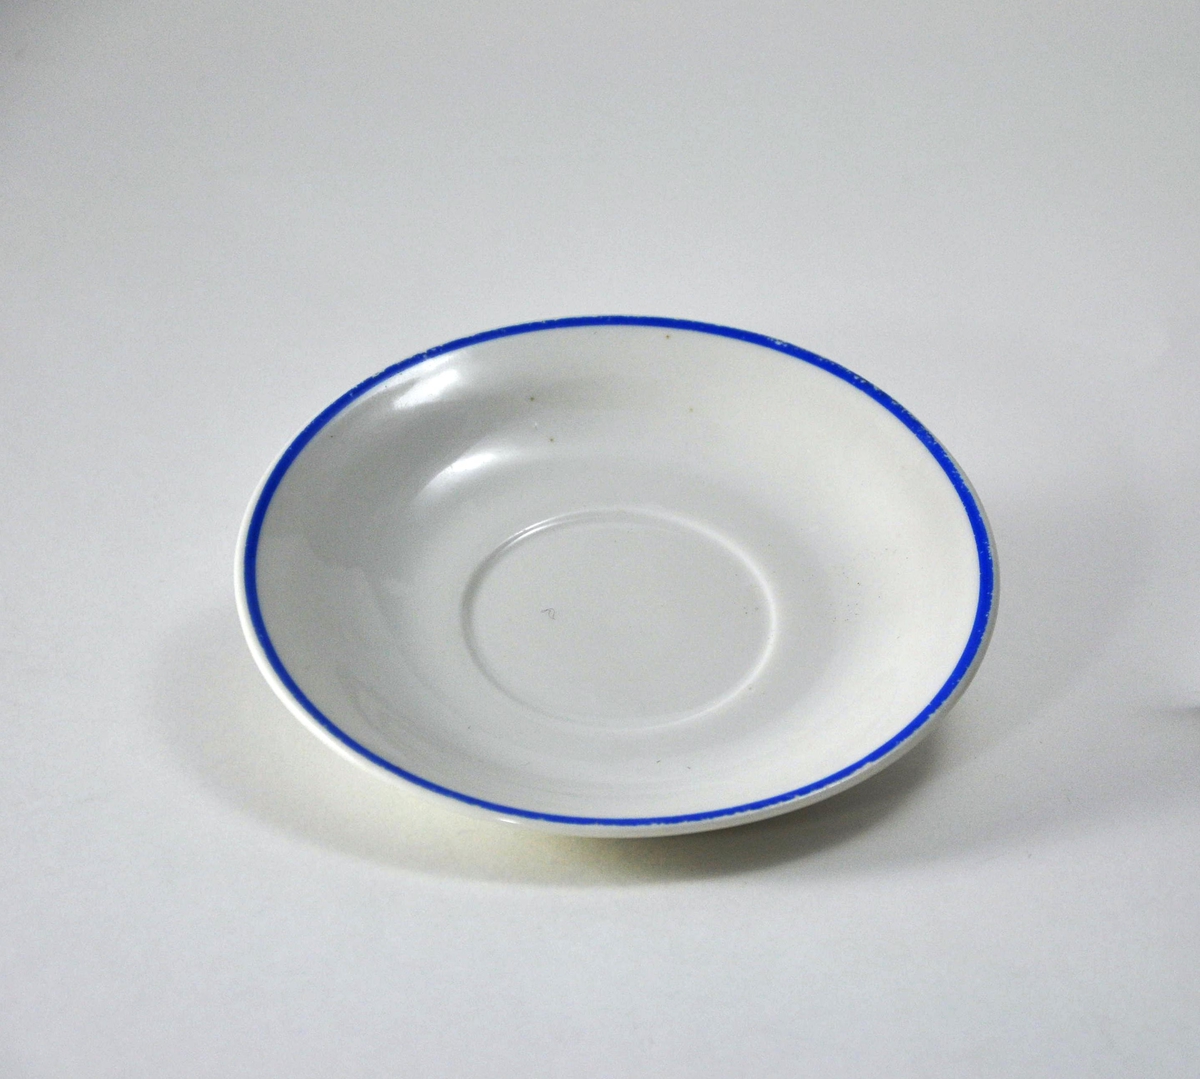 Liten skål i hvit porselen med blå munningsrand.